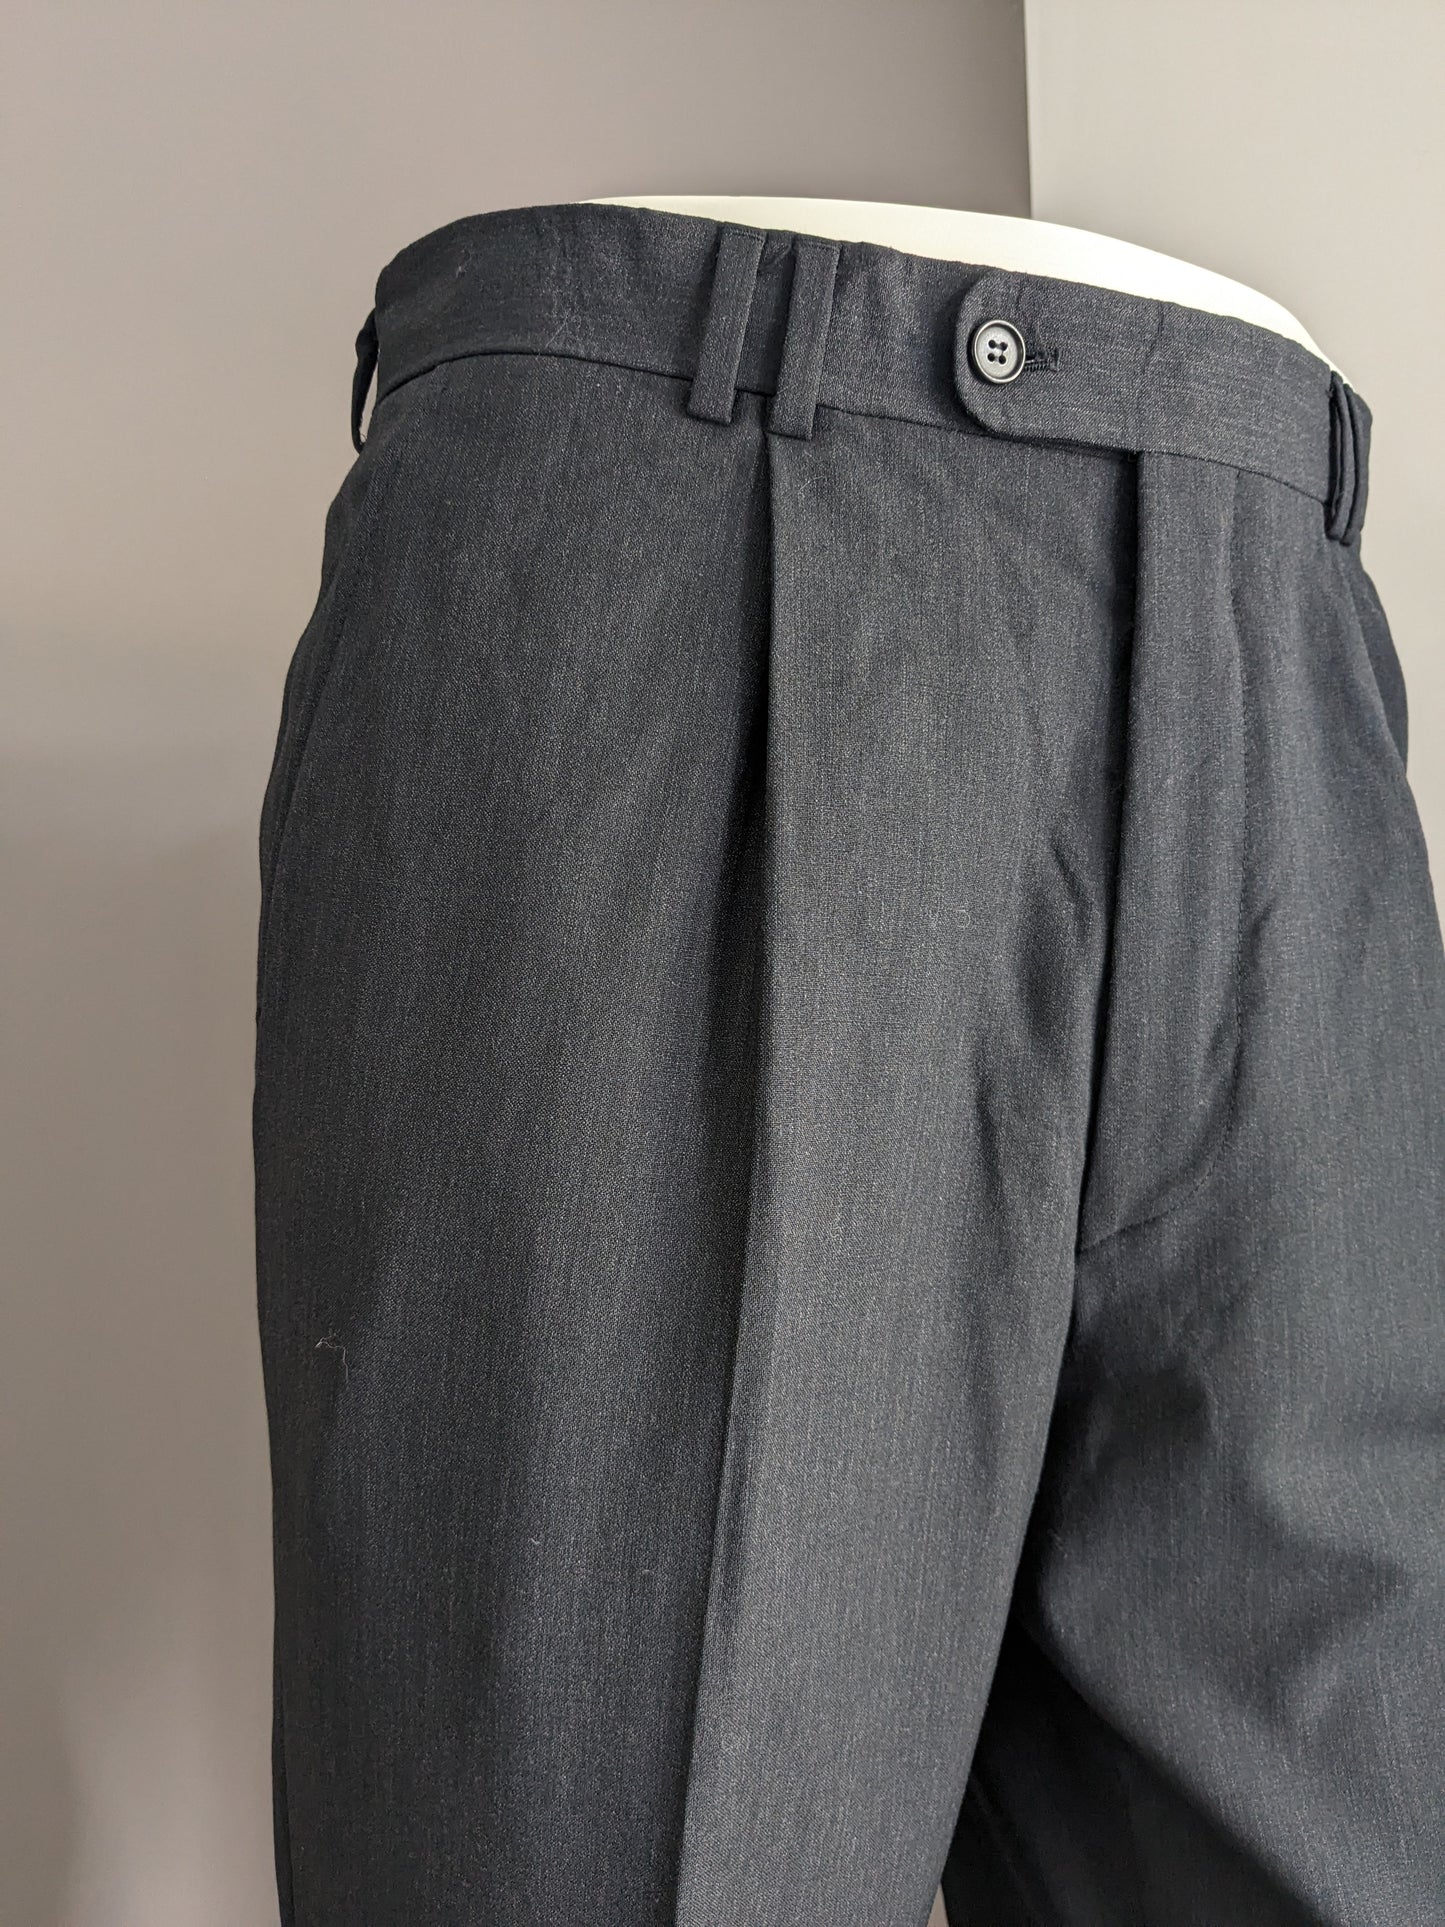 Pantalon avec couverture. Gris foncé mélangé. Taille 52 / L. # 501.